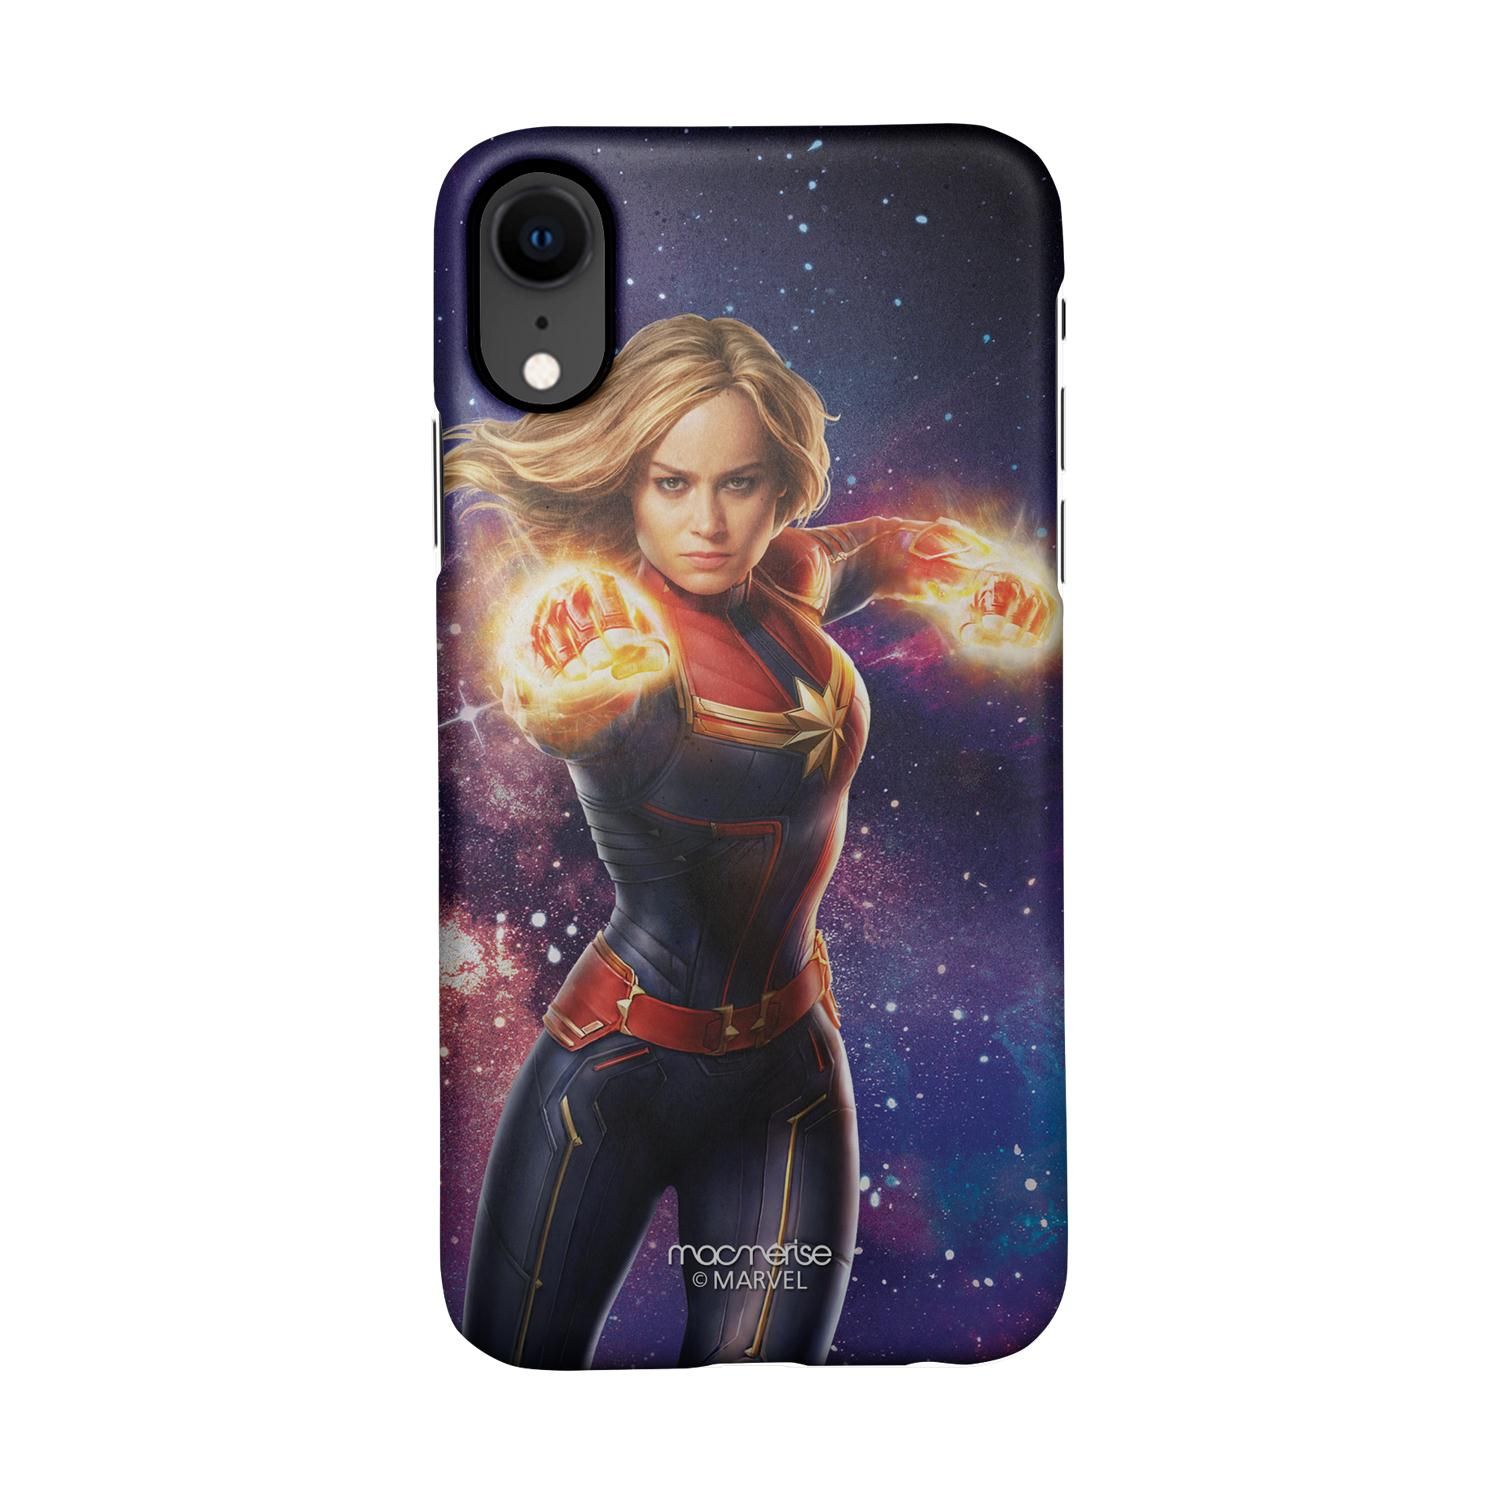 Buy Fierce Captain Marvel - Sleek Phone Case for iPhone XR Online